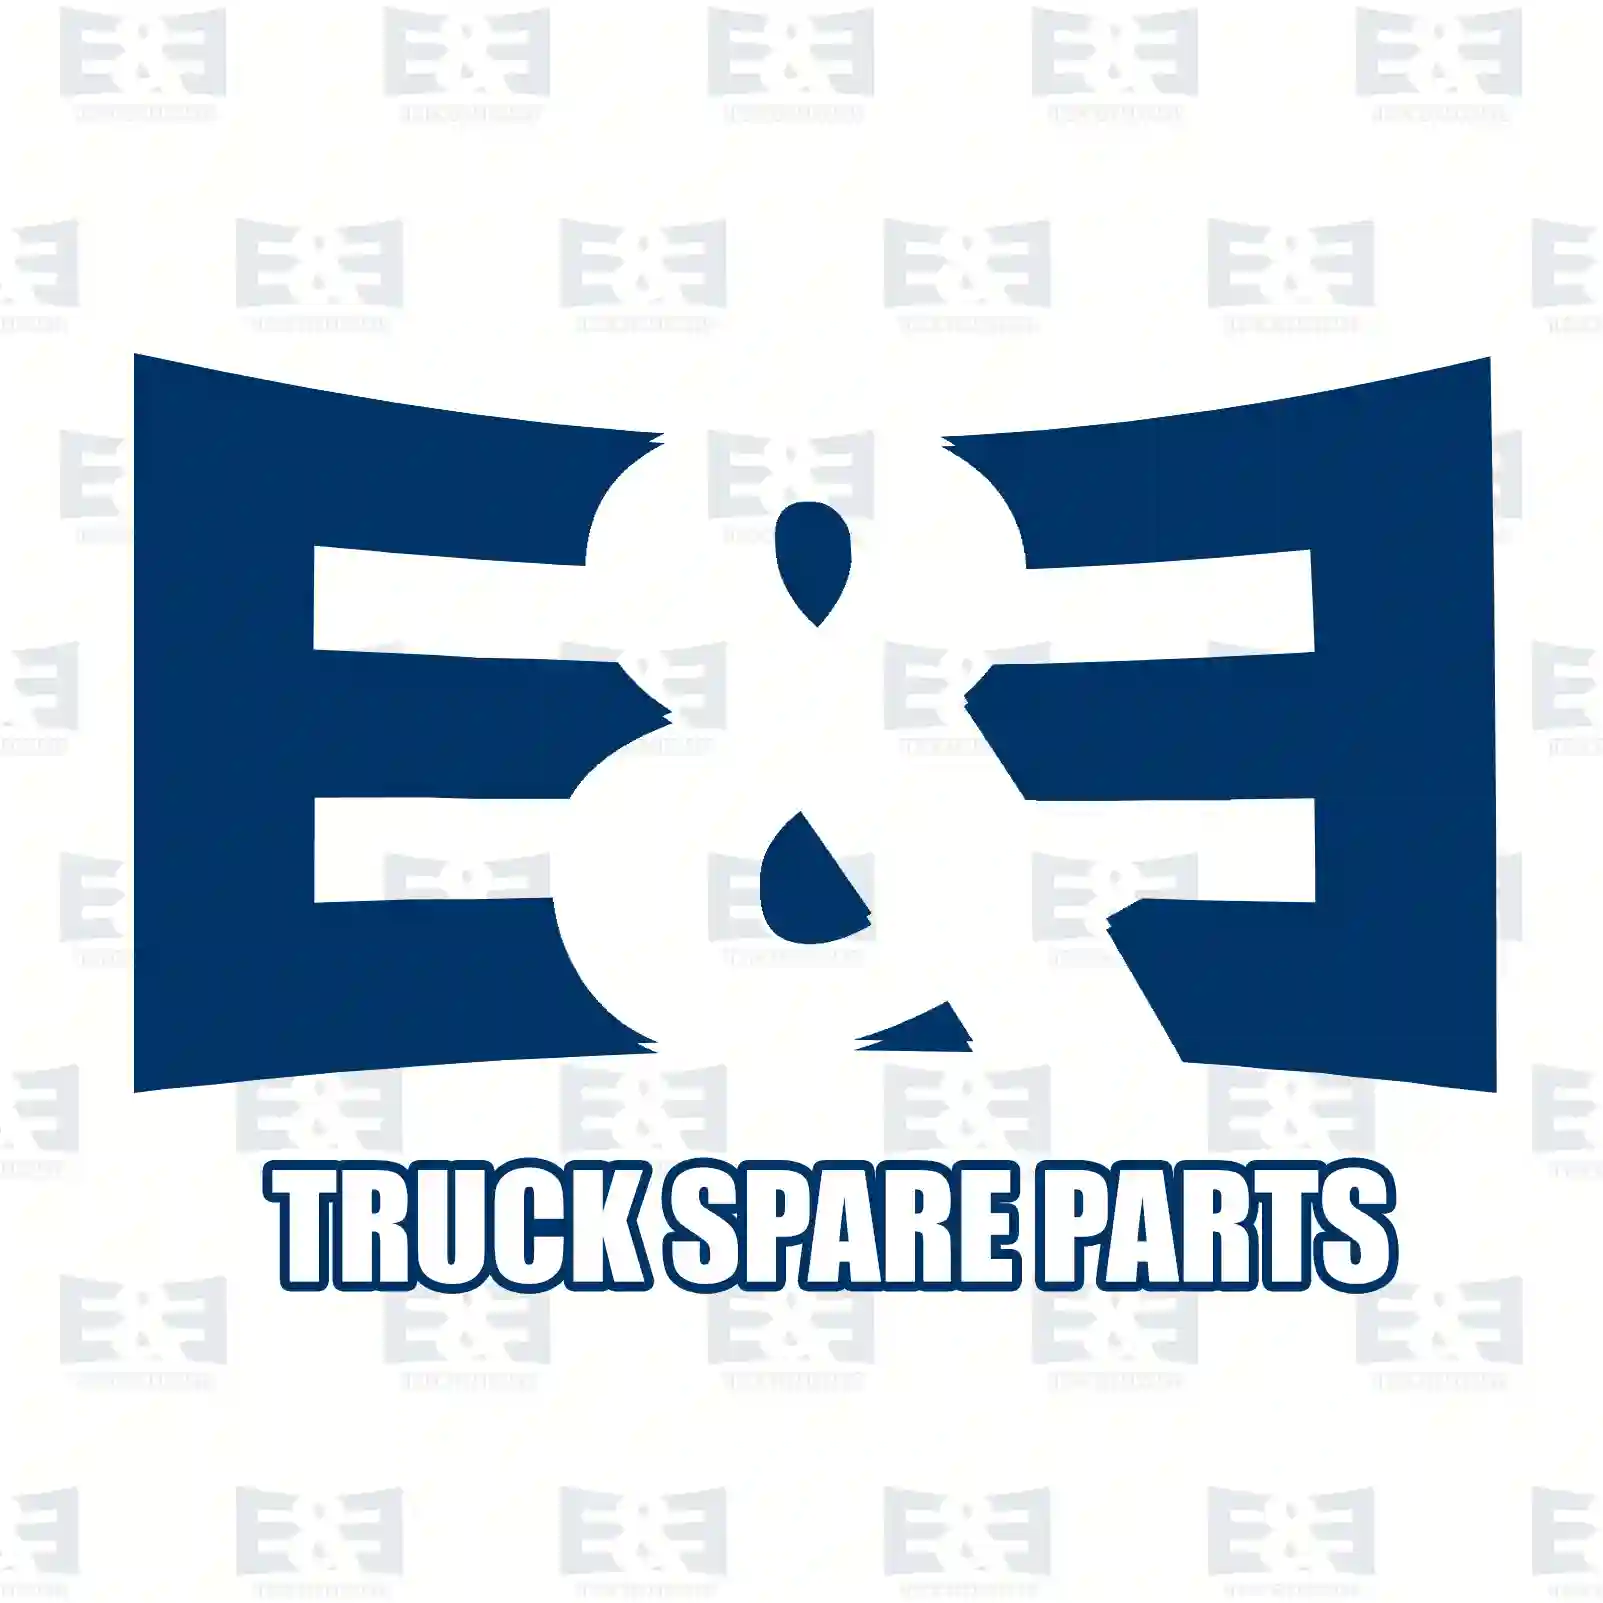 Fuse Fuse, EE No 2E2290642 ,  oem no:1376688, 07933100012, 81254360089, 81254360091, 7400982617, 982617, 07W937629, ZG20441-0008 E&E Truck Spare Parts | Truck Spare Parts, Auotomotive Spare Parts